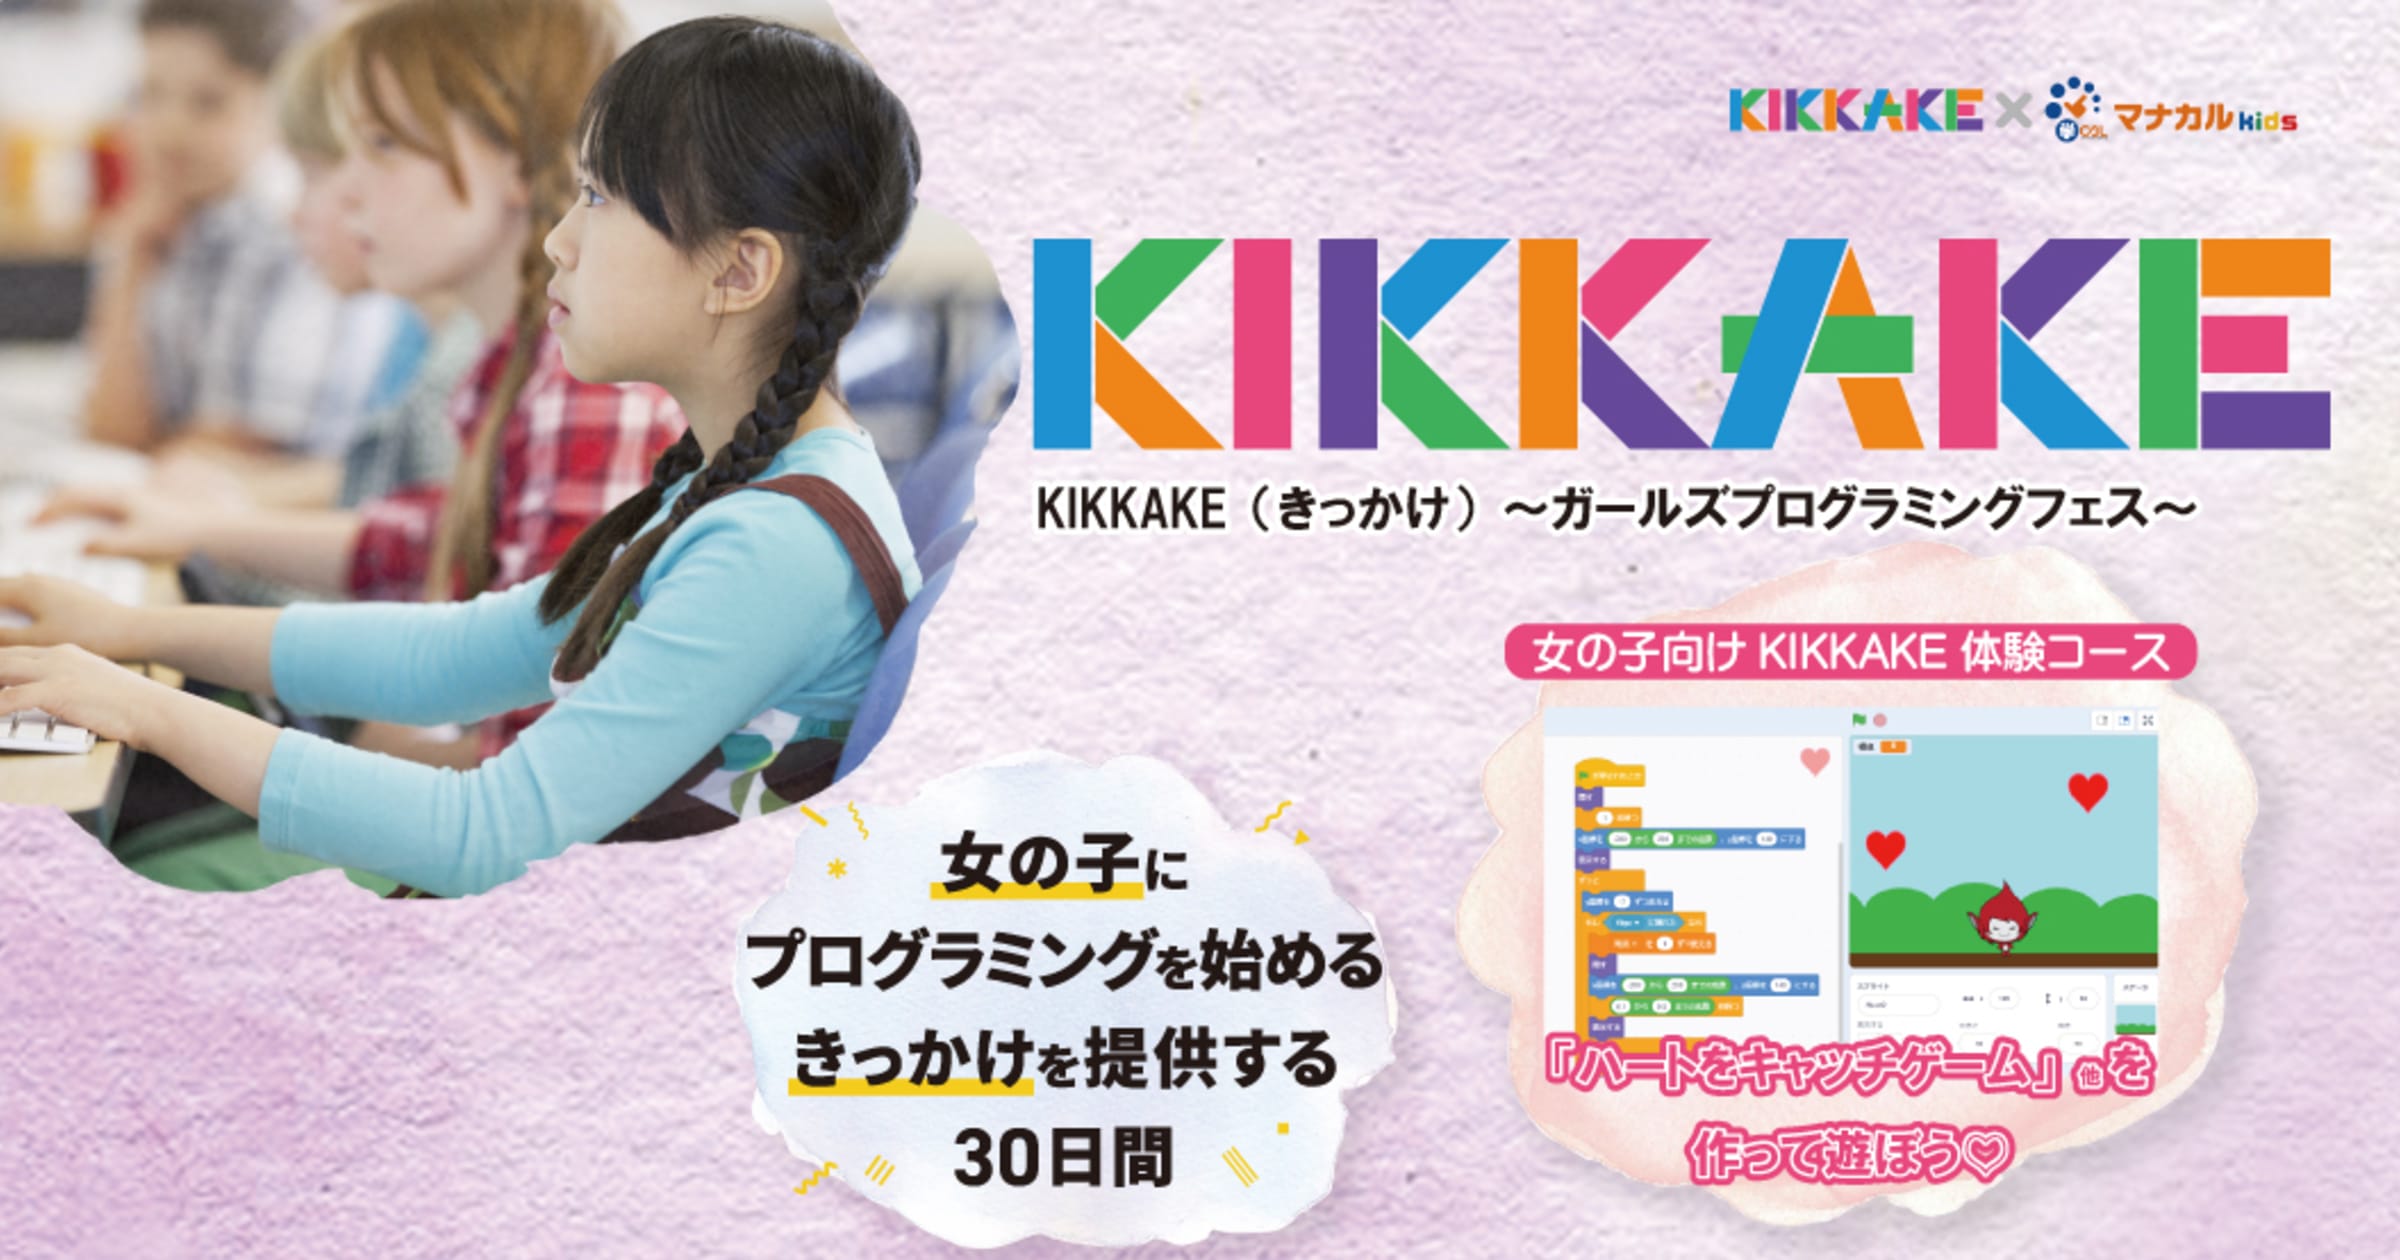 スクラッチで可愛いゲームが作れる 女の子必見のプログラミング体験会 Kikkake きっかけ